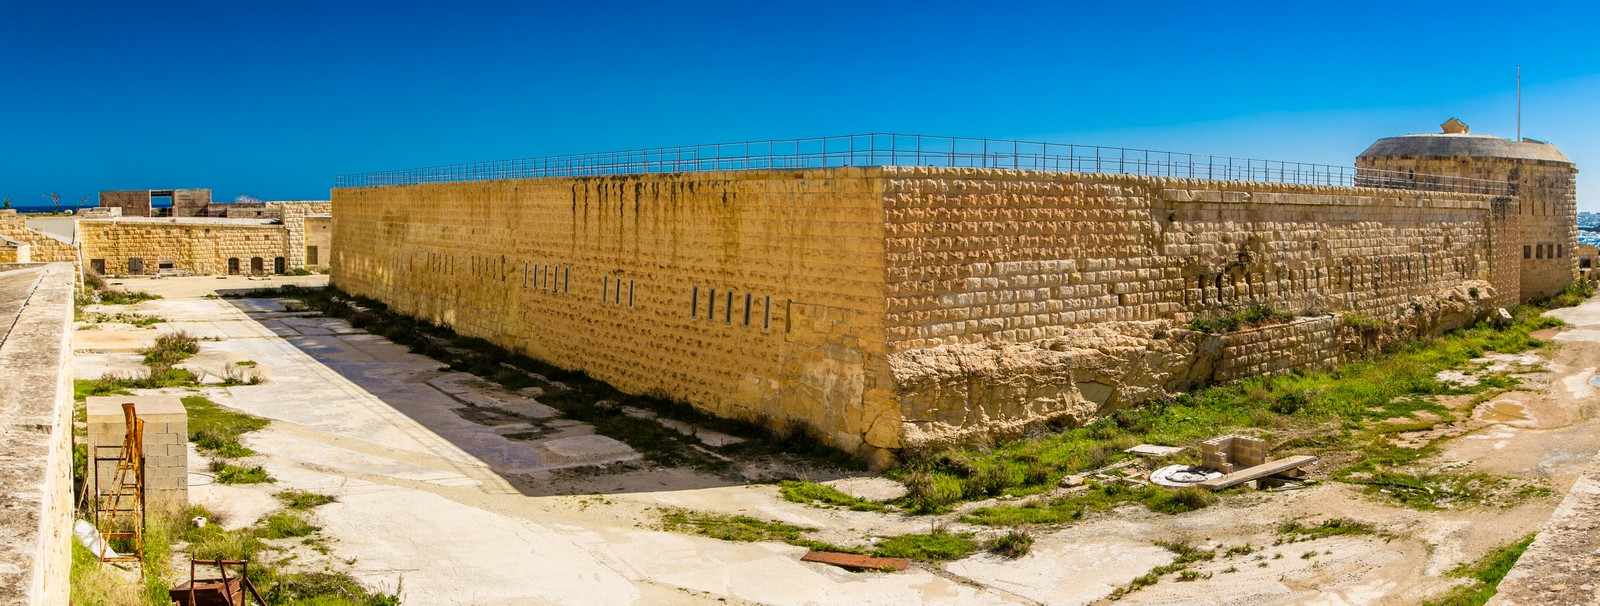 Fort Tigne 02